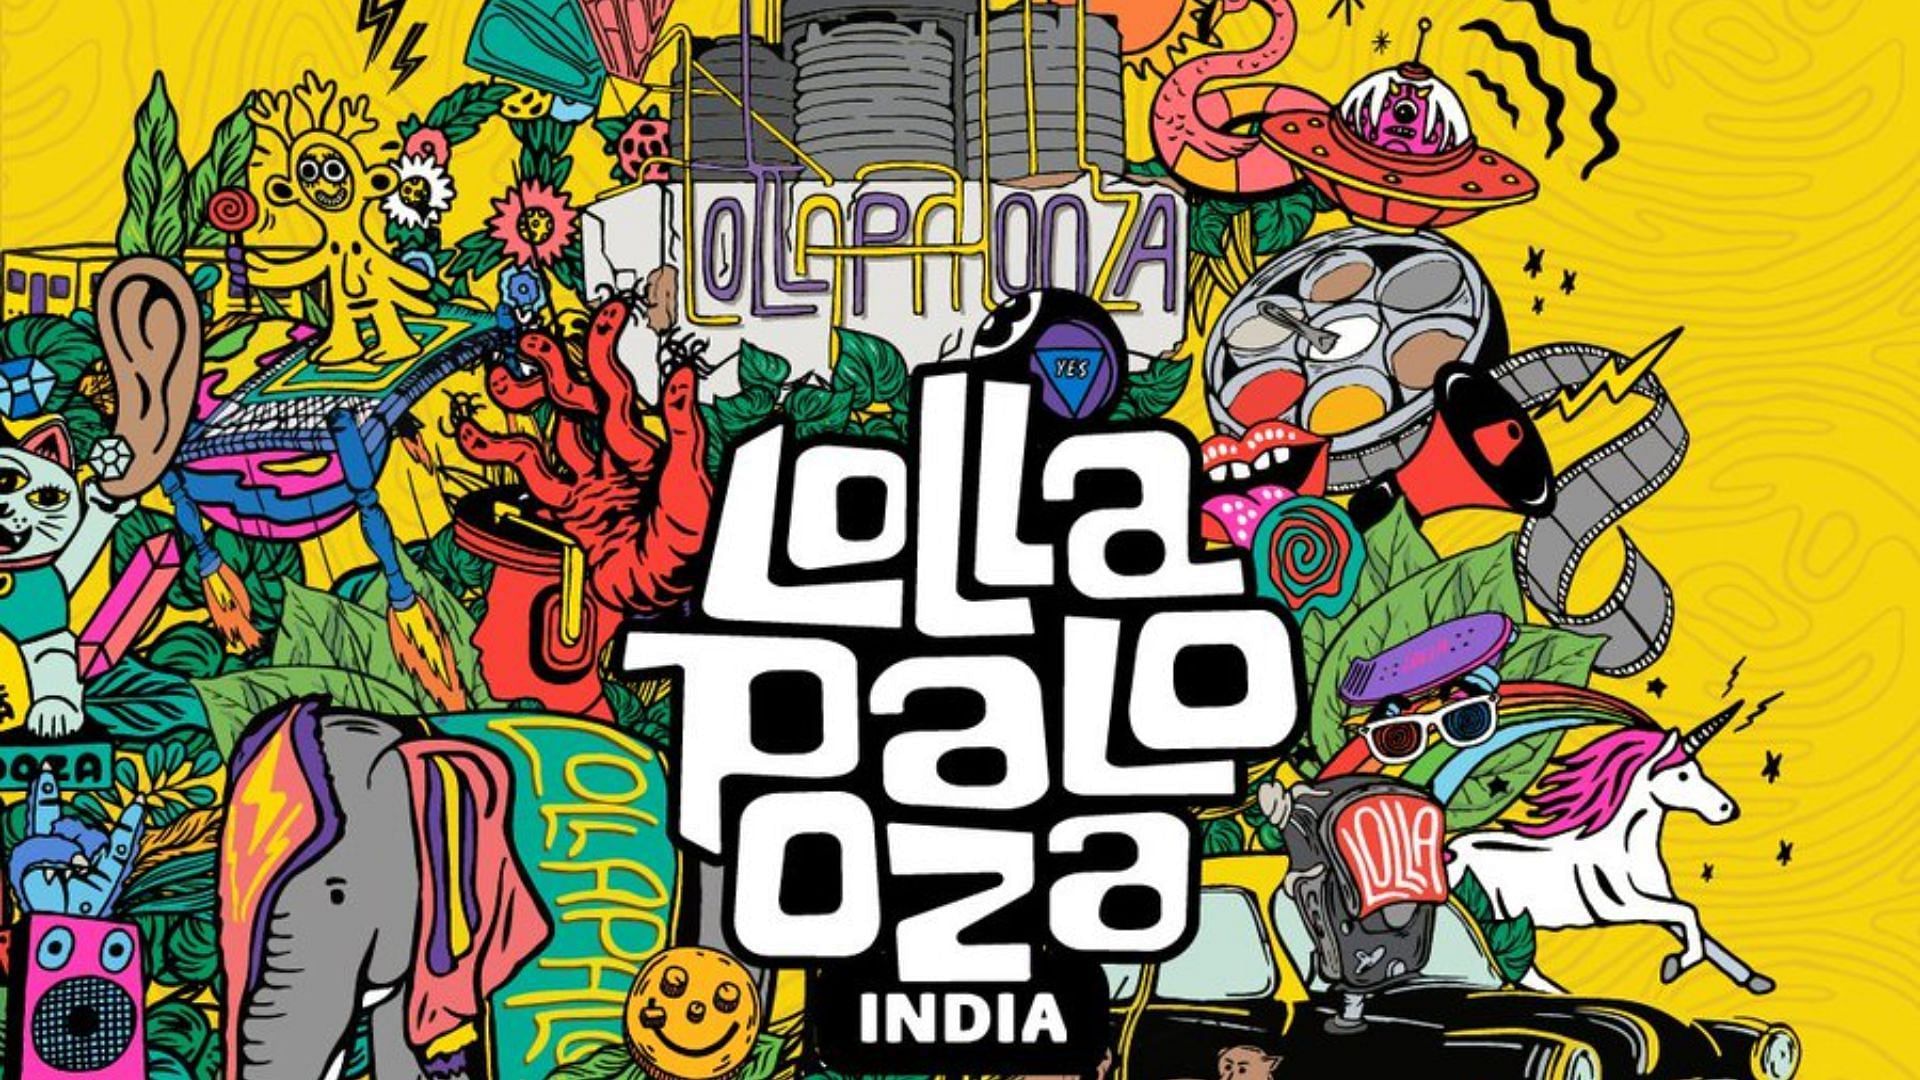 Jackson Wang at Lollapalooza India this weekend, part of his Magic